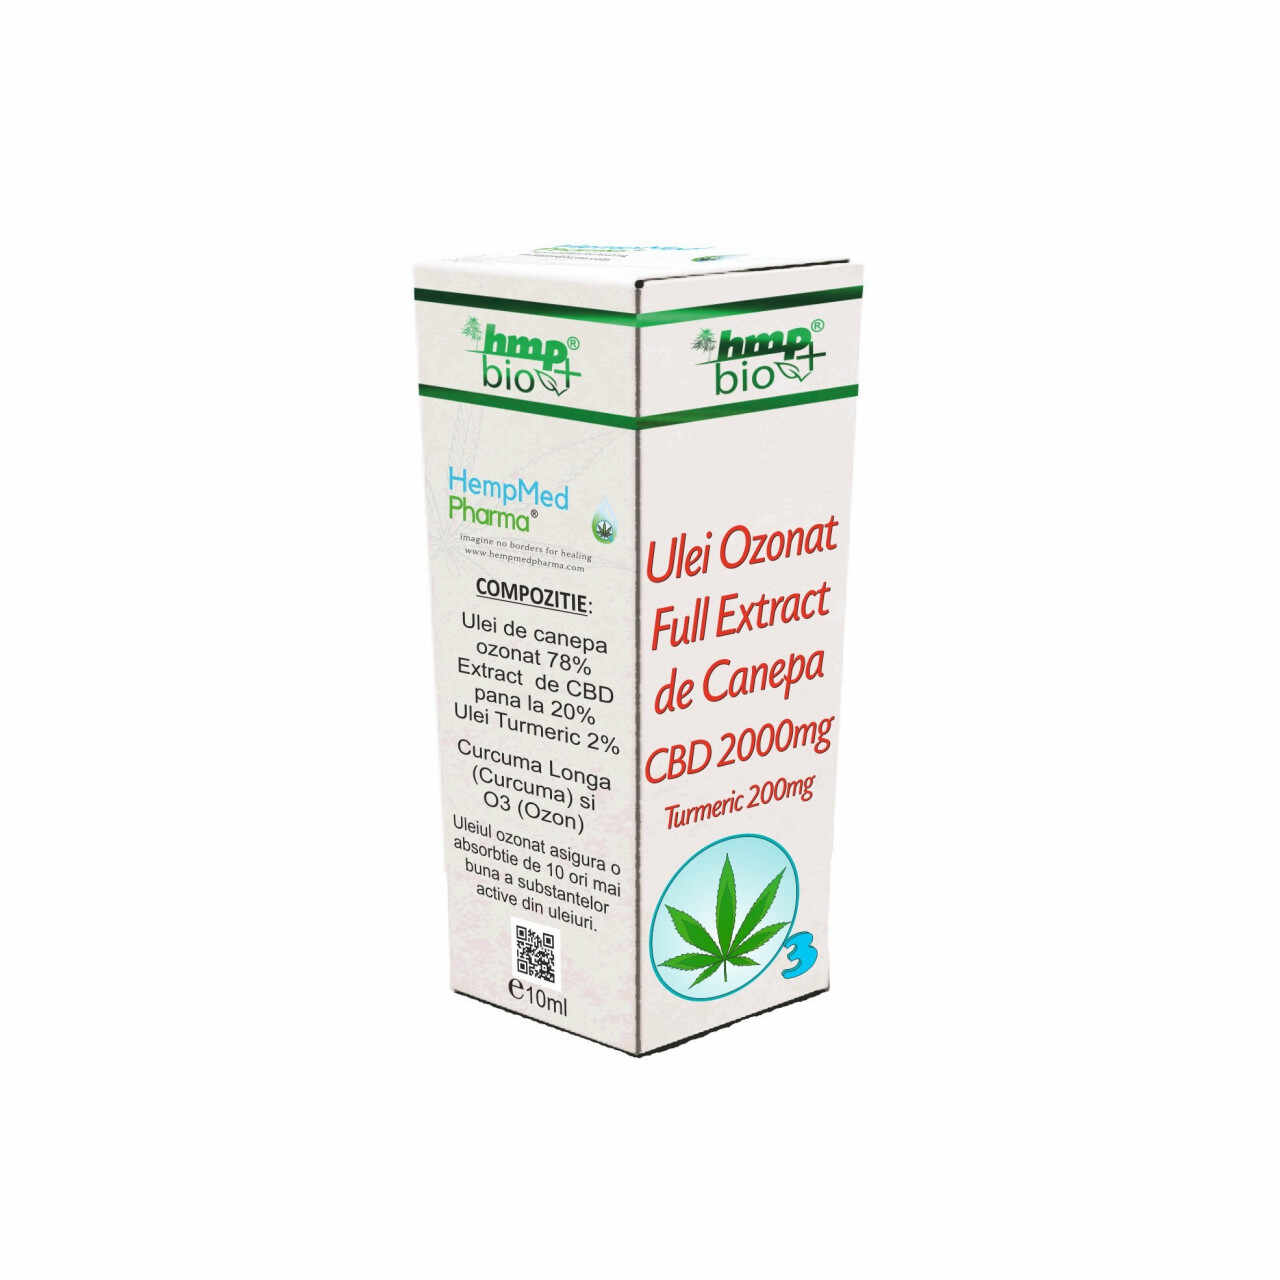 HEMPMED PHARMA ULEI OZONAT FULL EXTRACT DE CANEPA CBD 2000 mg SI TURMERIC 200 mg